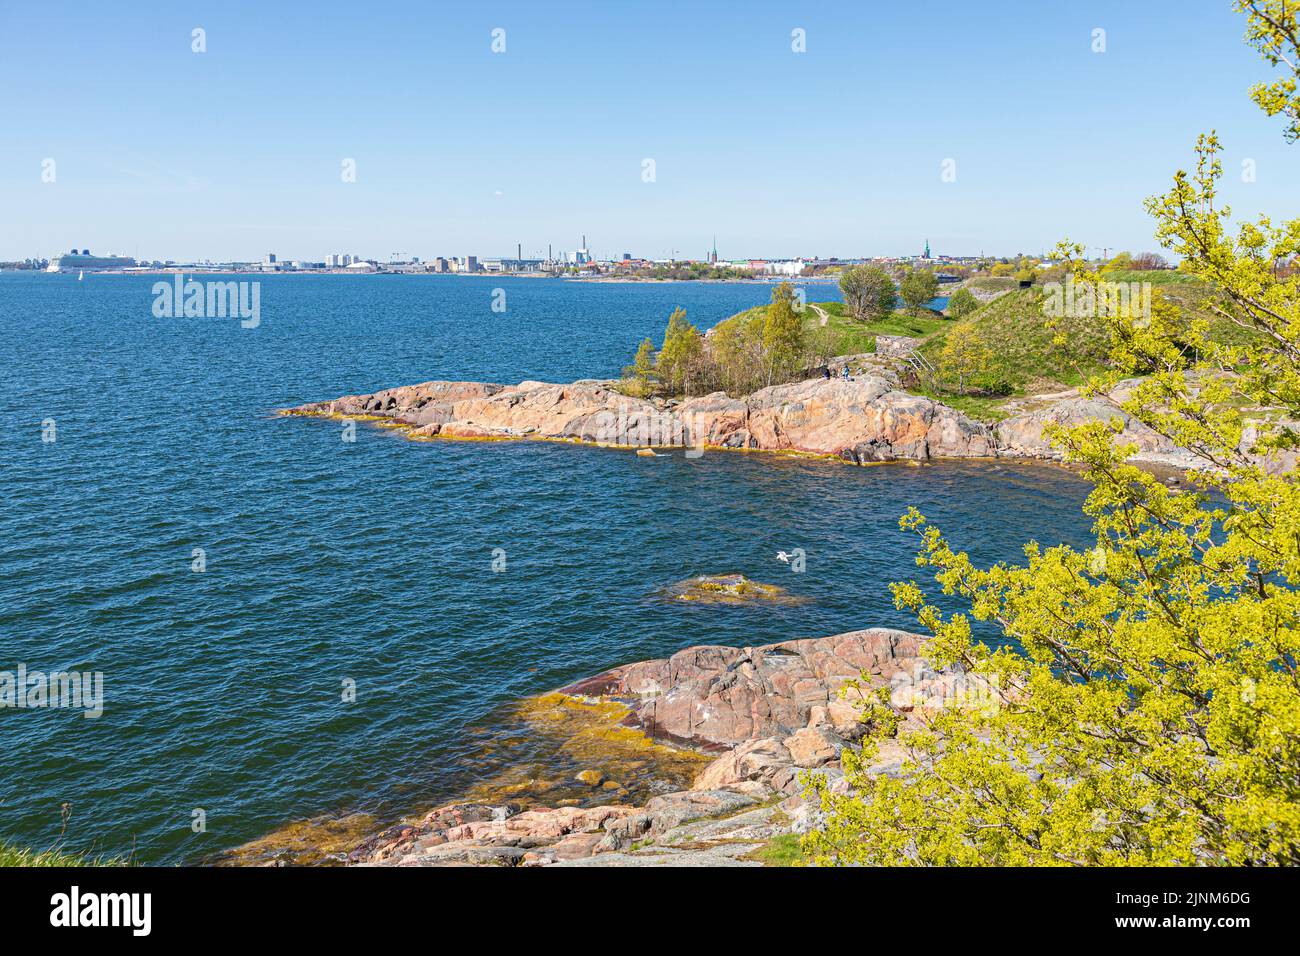 Una bahía tranquila en la costa oeste de la isla de Suomenlinna frente a Helsinki, Finlandia Foto de stock